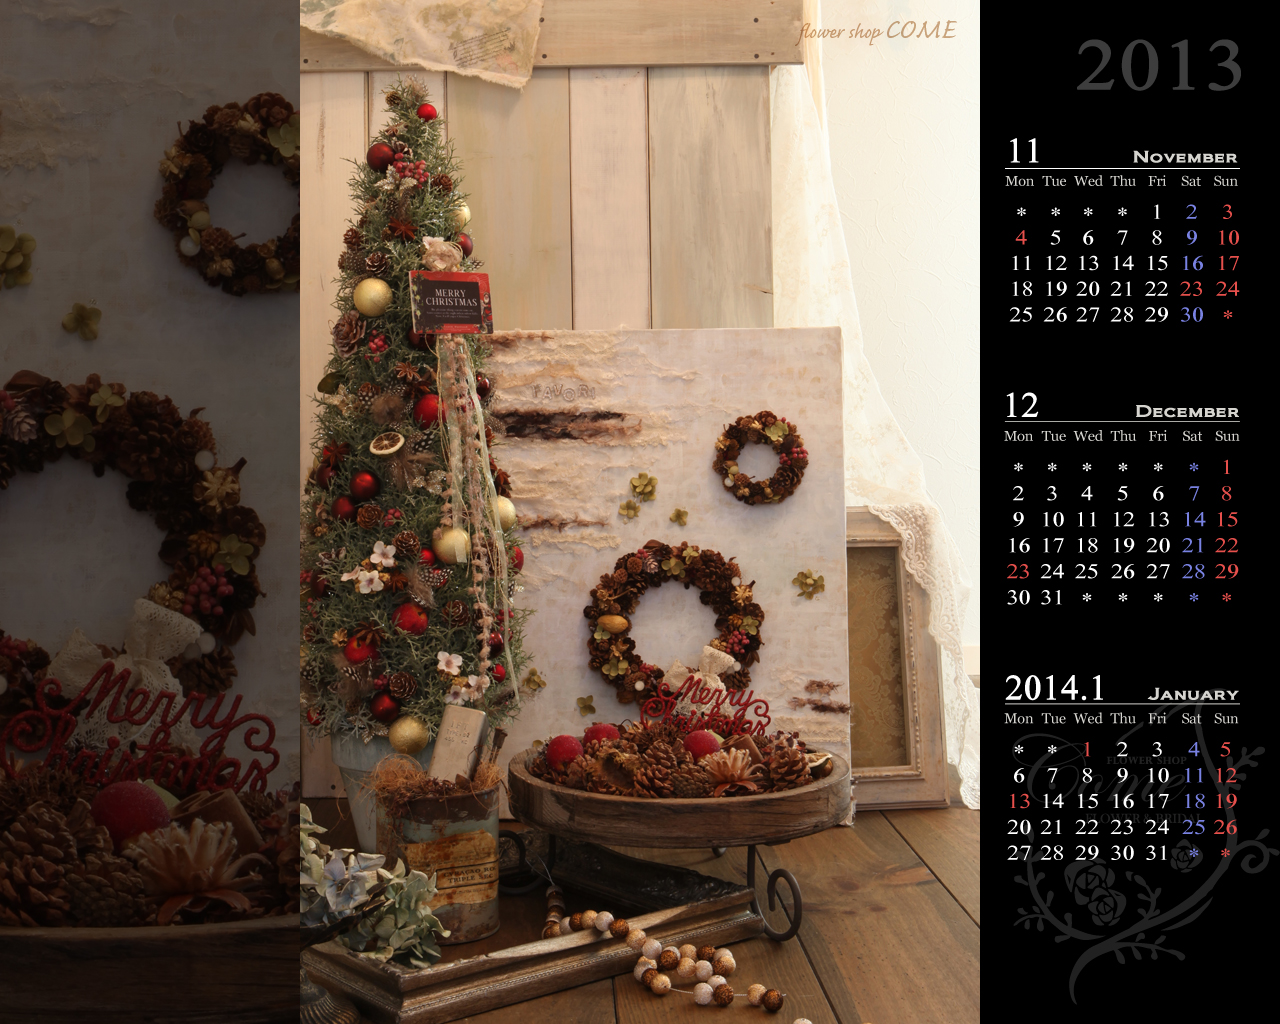 13年壁紙カレンダープレゼント 無料 花の写真を使った壁紙カレンダーを無料でダウンロード フラワーショップ花夢